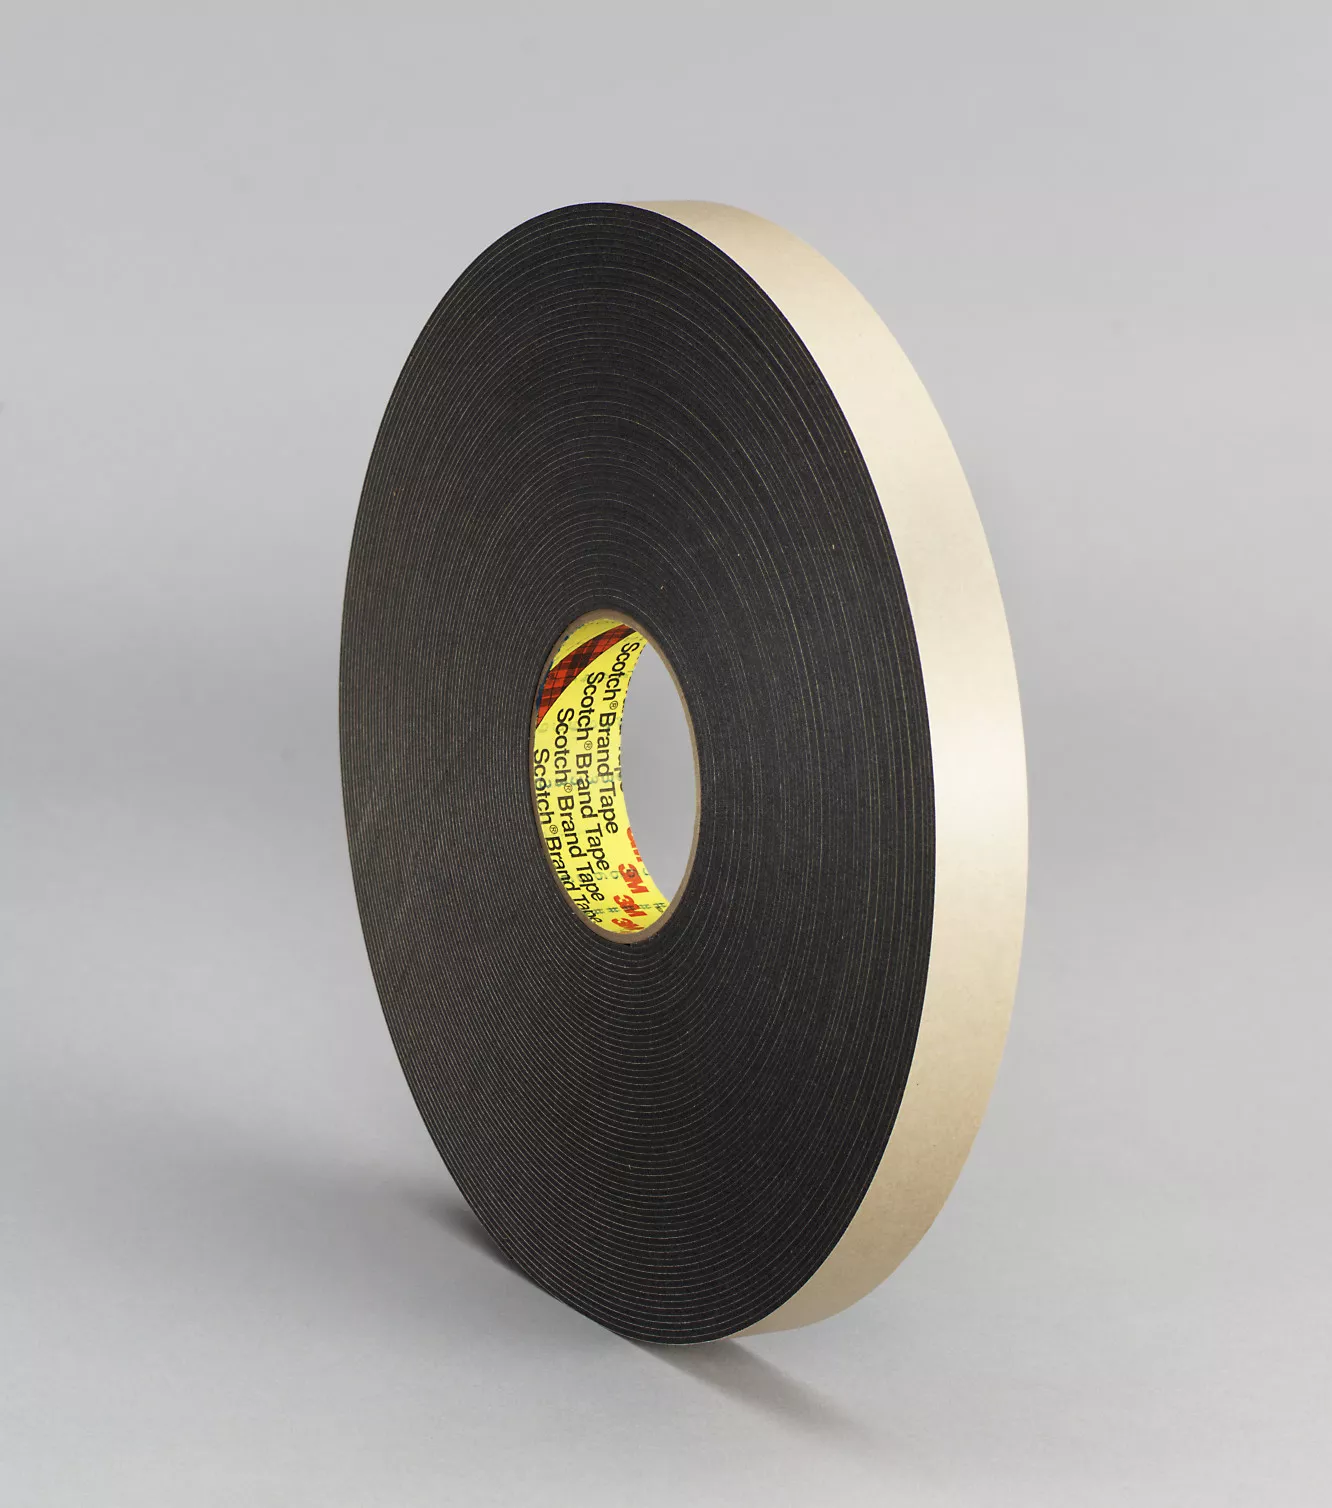 3M™ Double Coated Polyethylene Foam Tape 4496B, Black, 1/2 in x 36 yd,
62 mil, 18 Roll/Case